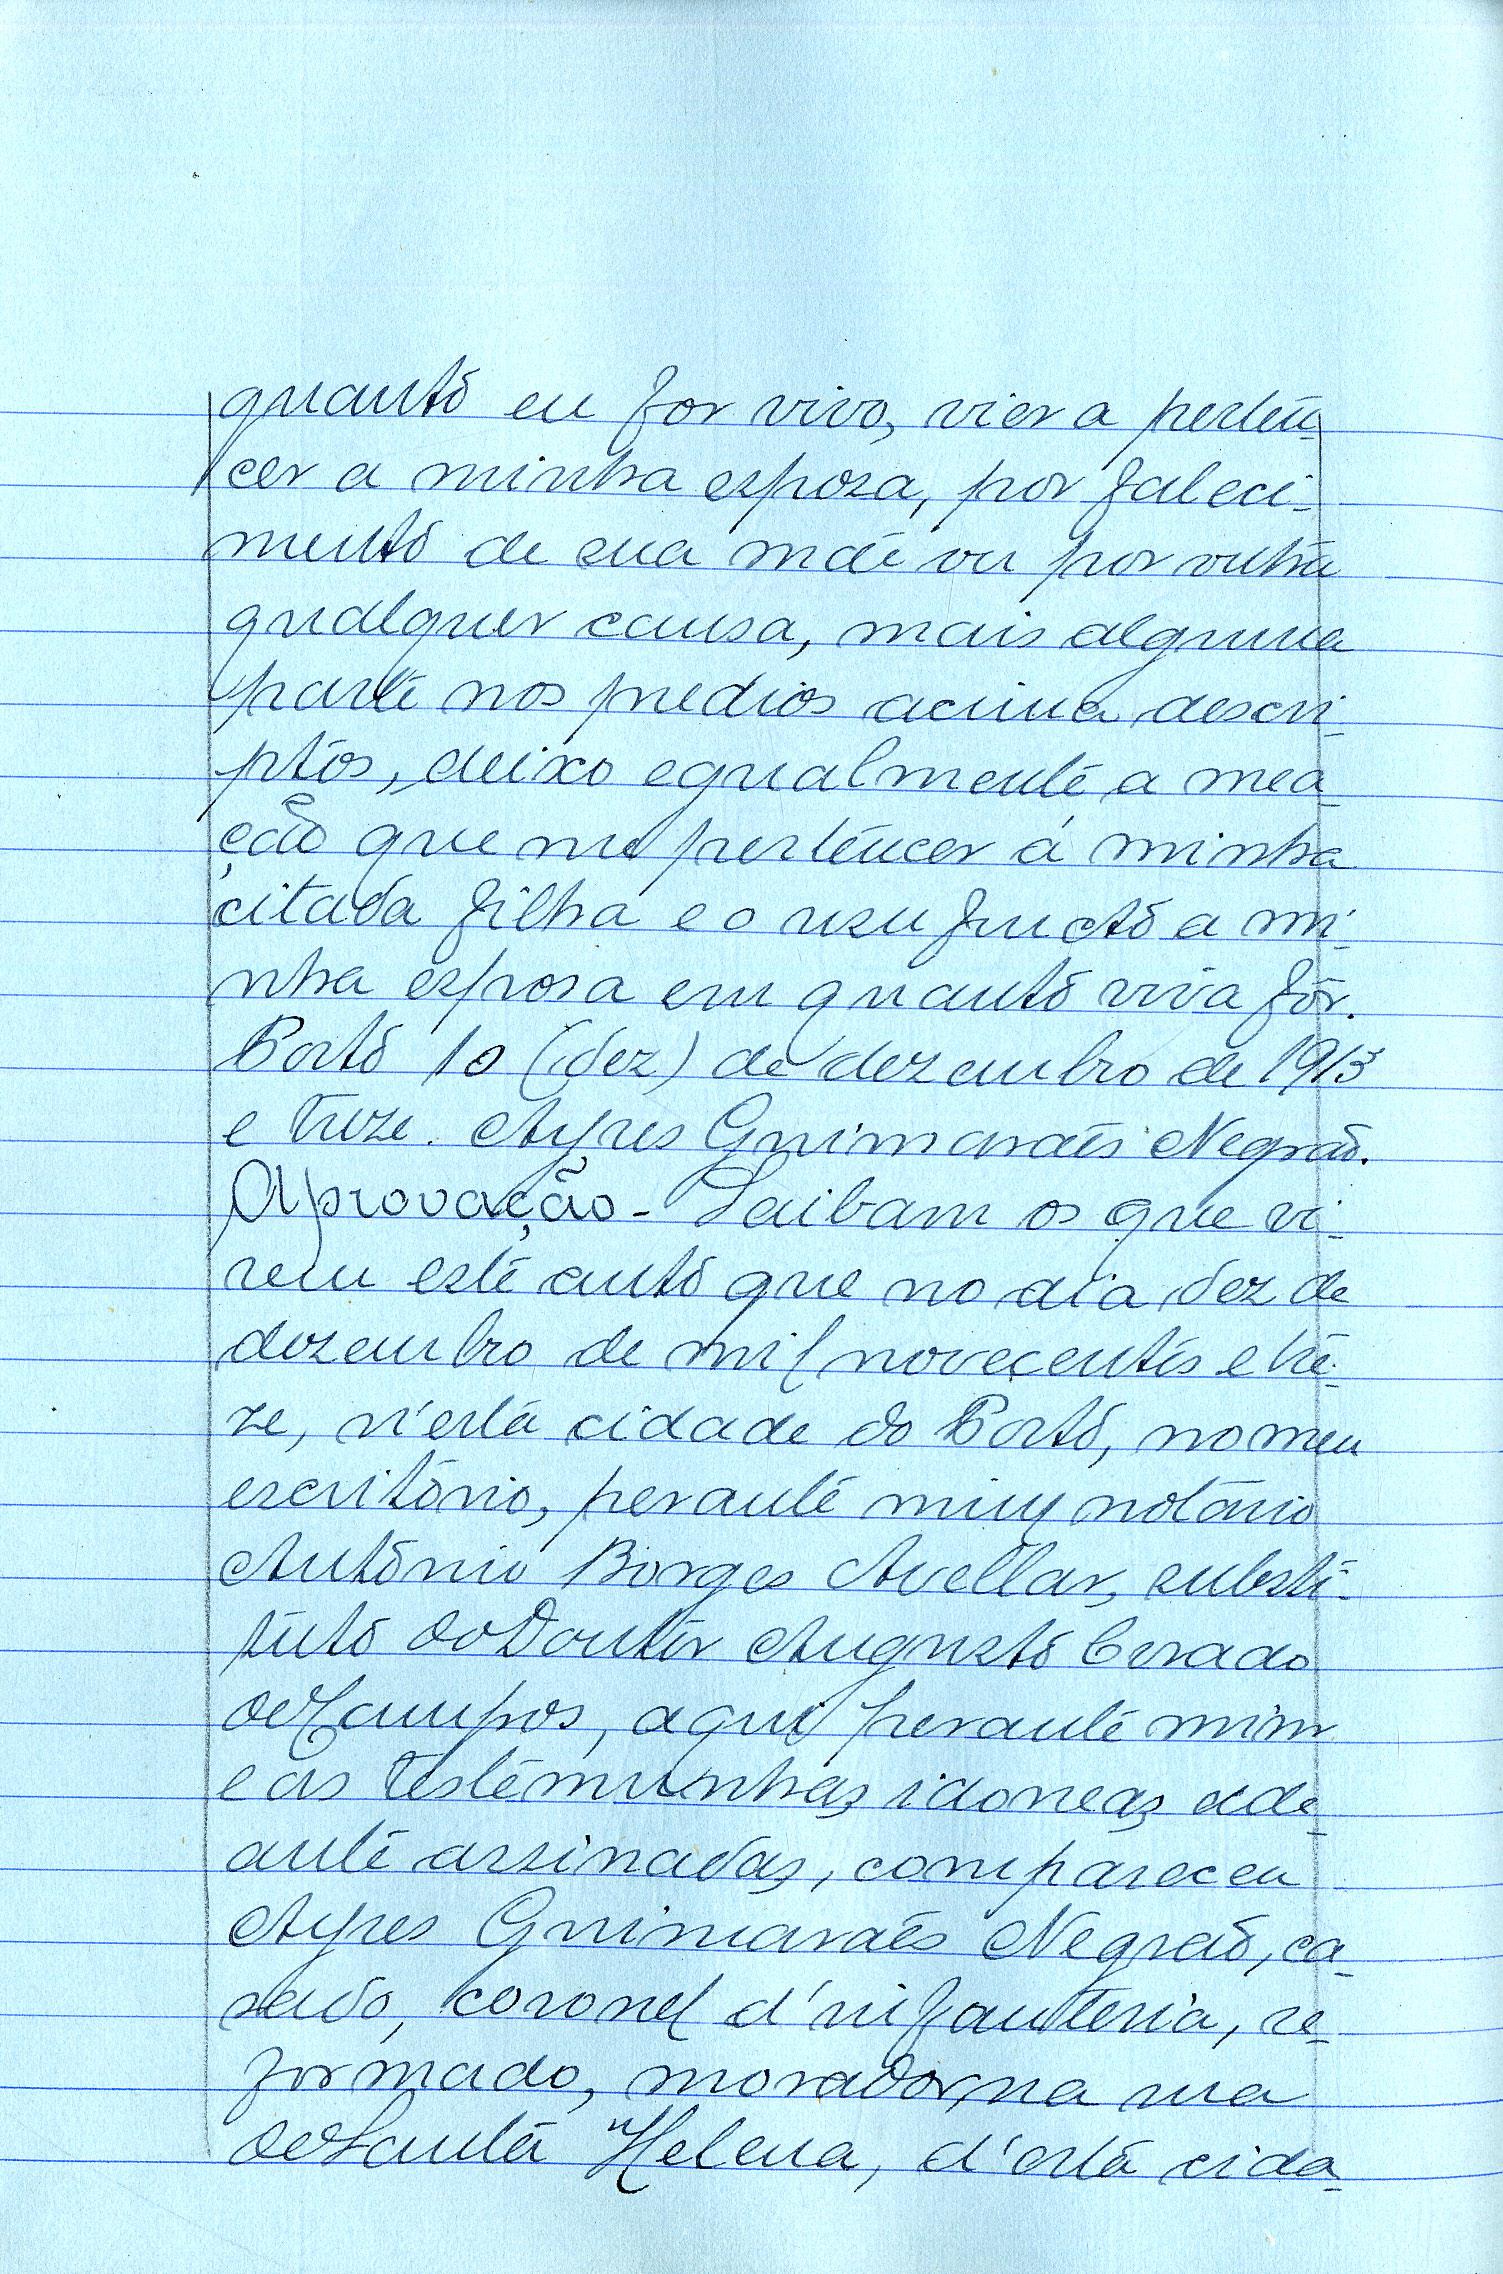 Registo do testamento com que faleceu Aires Guimarães Negrão, Coronel de Infantaria do quadro de reserva